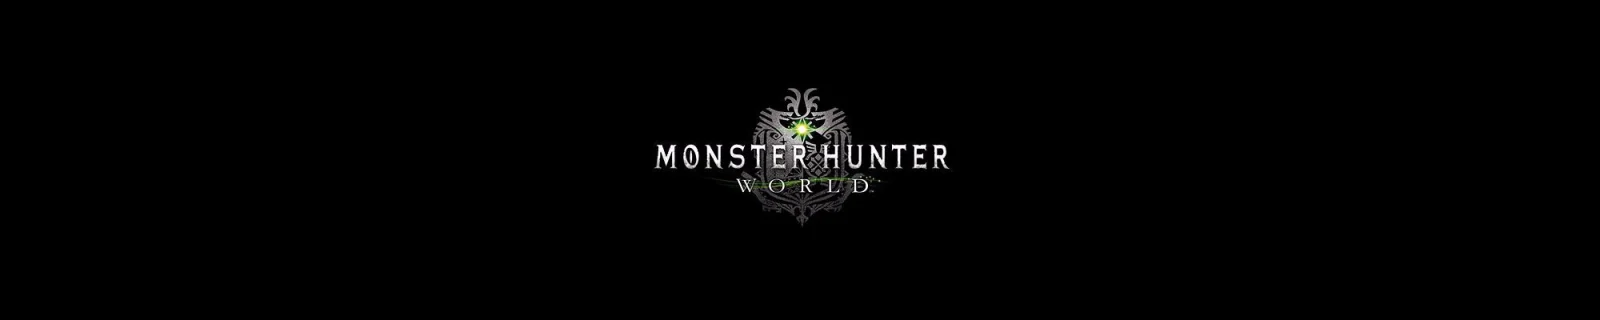 《怪物猎人 世界》6月20日晚将会举办实机公开展示会